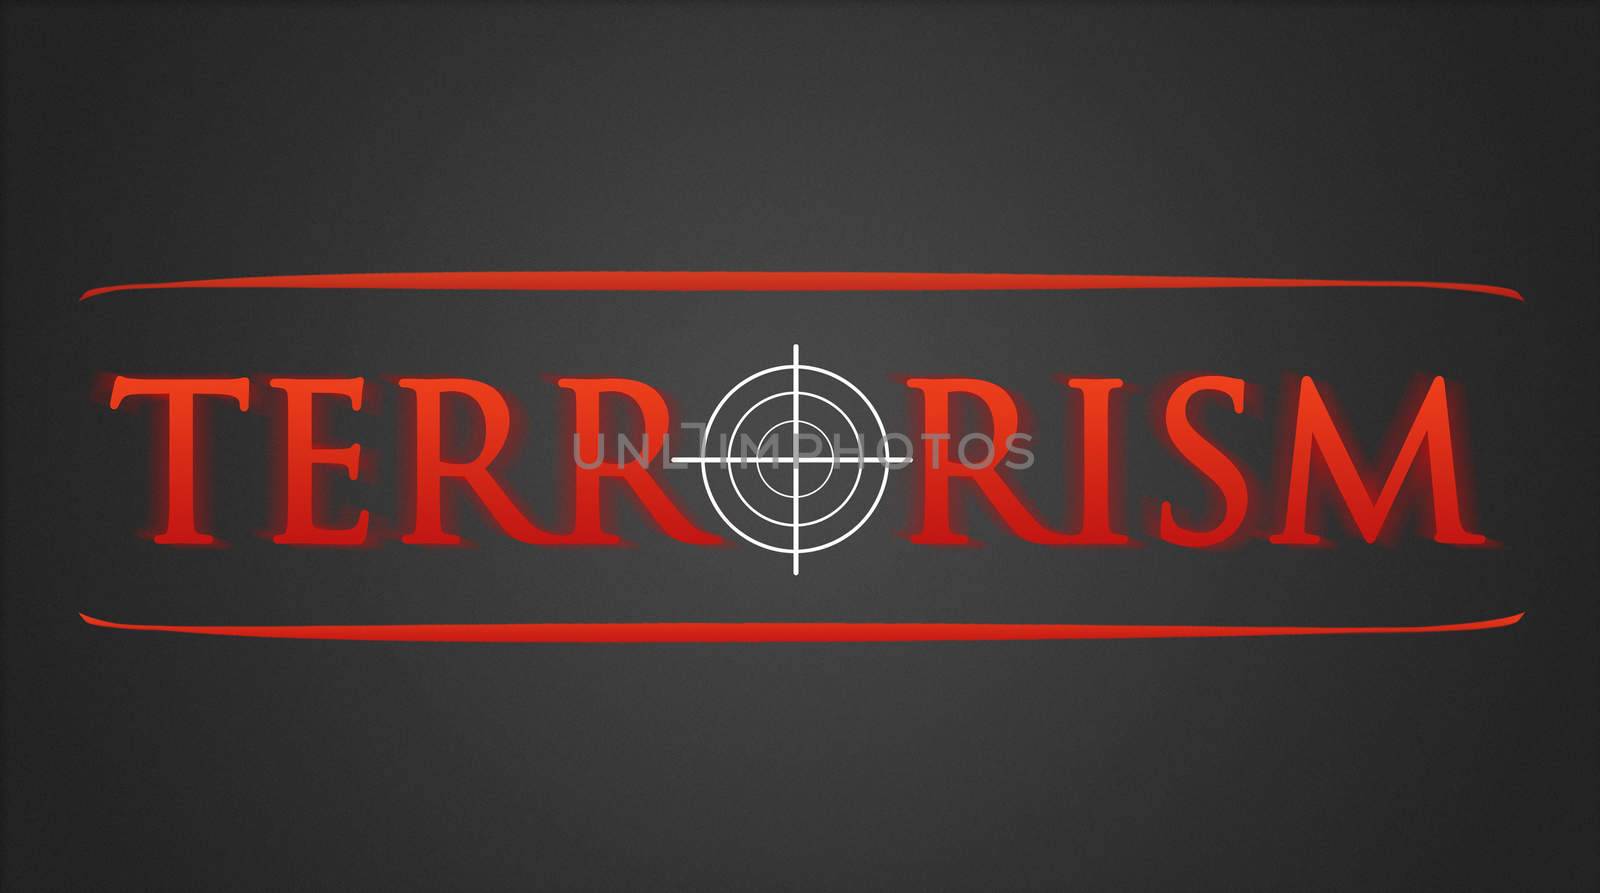 Terrorism illustration - white hairline cross in red lettering